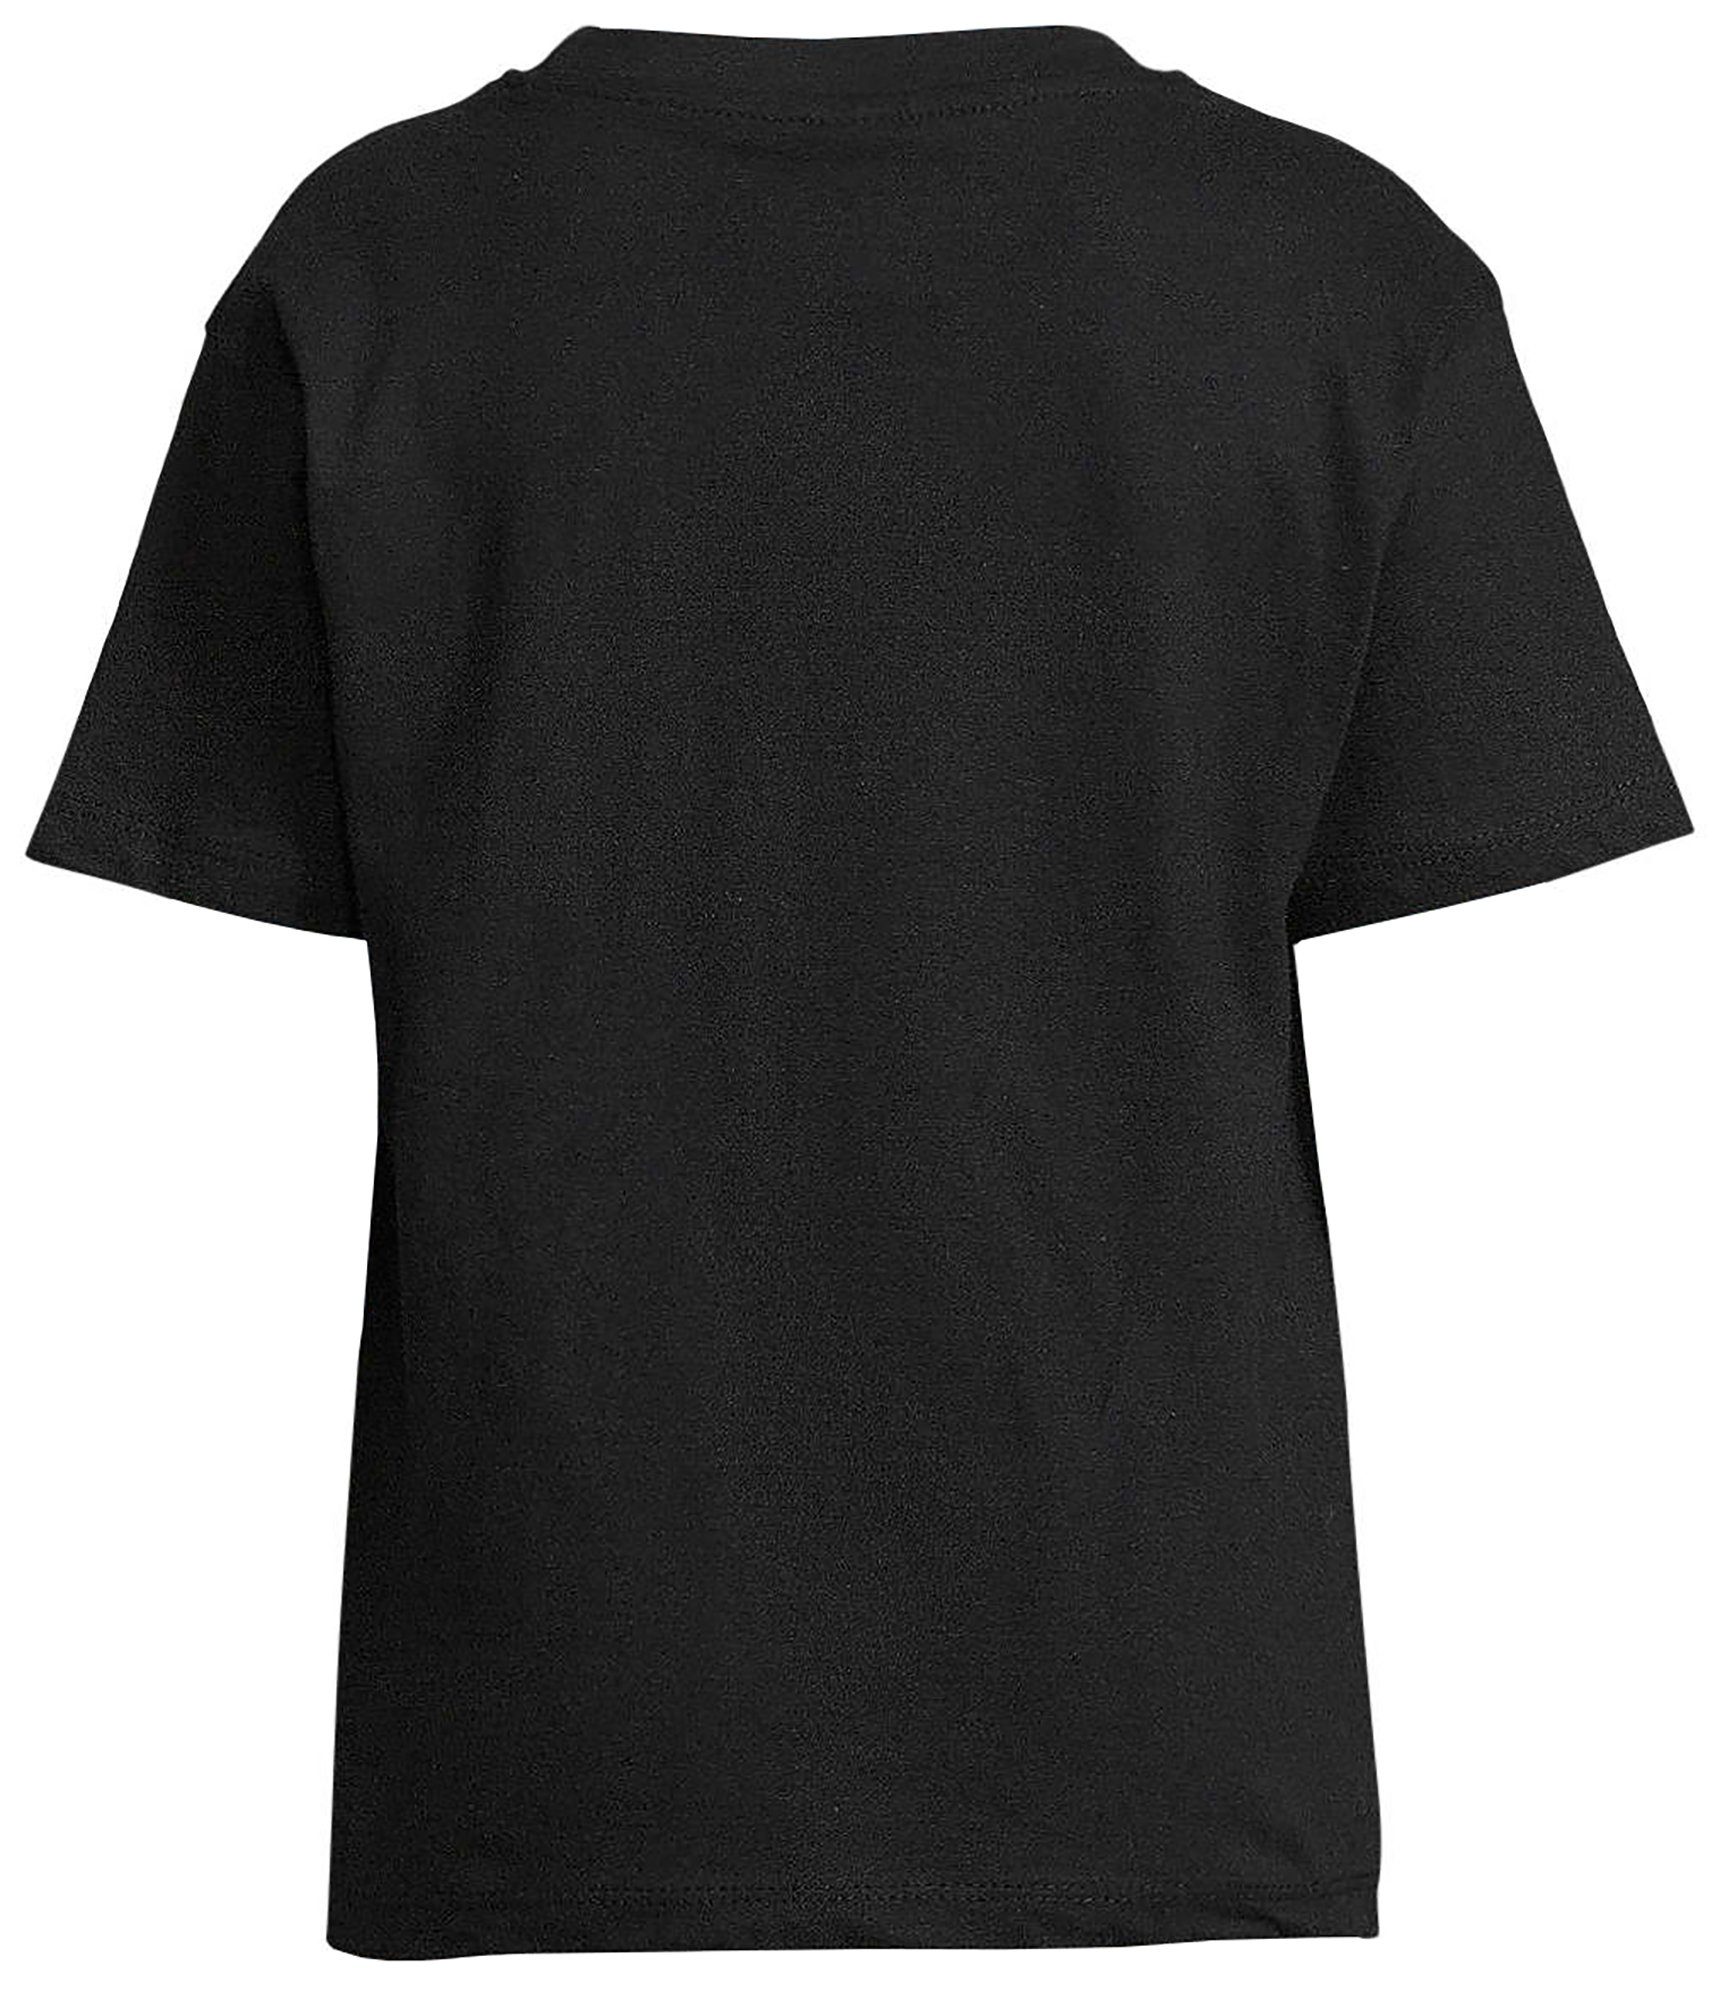 zwei i152 kuschelnde Pferde MyDesign24 Aufdruck, bedrucktes im Baumwollshirt Stil Yang mit Yin Print-Shirt Mädchen T-Shirt schwarz